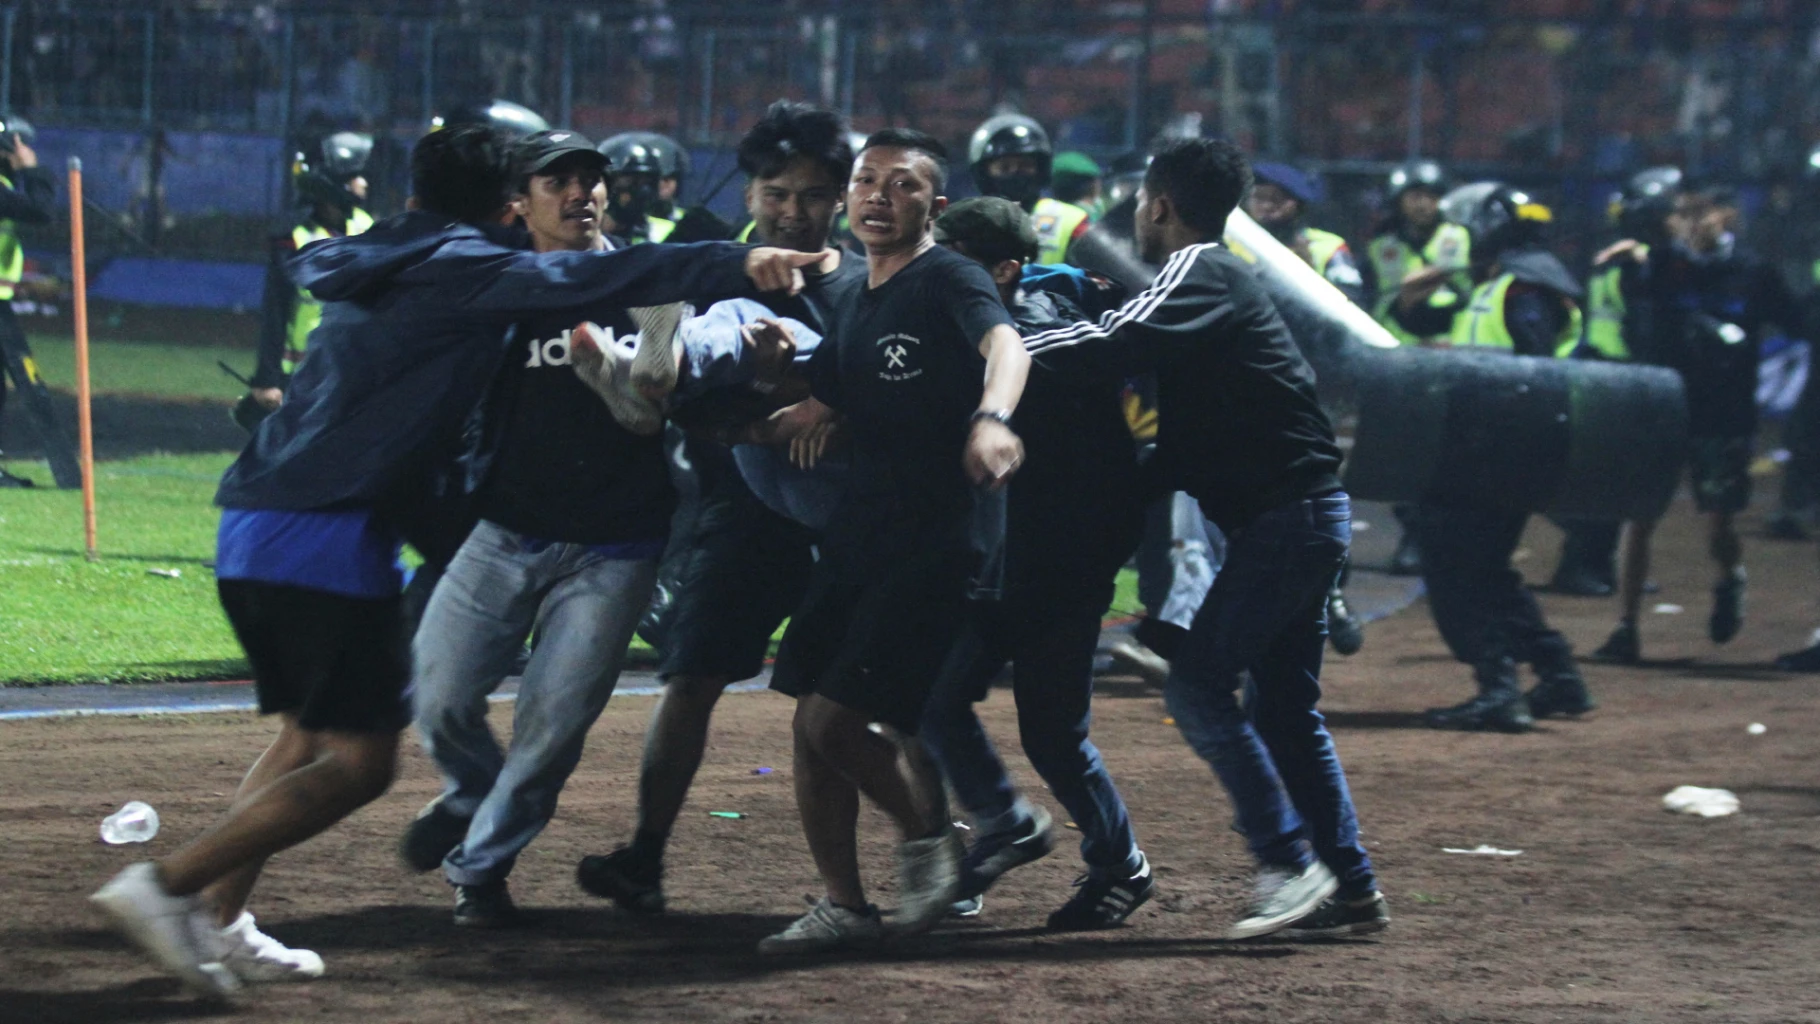 อินโดฯ ตั้งทีมสืบสวนเหตุ 'เหยียบกันตาย' ในสนามฟุตบอล